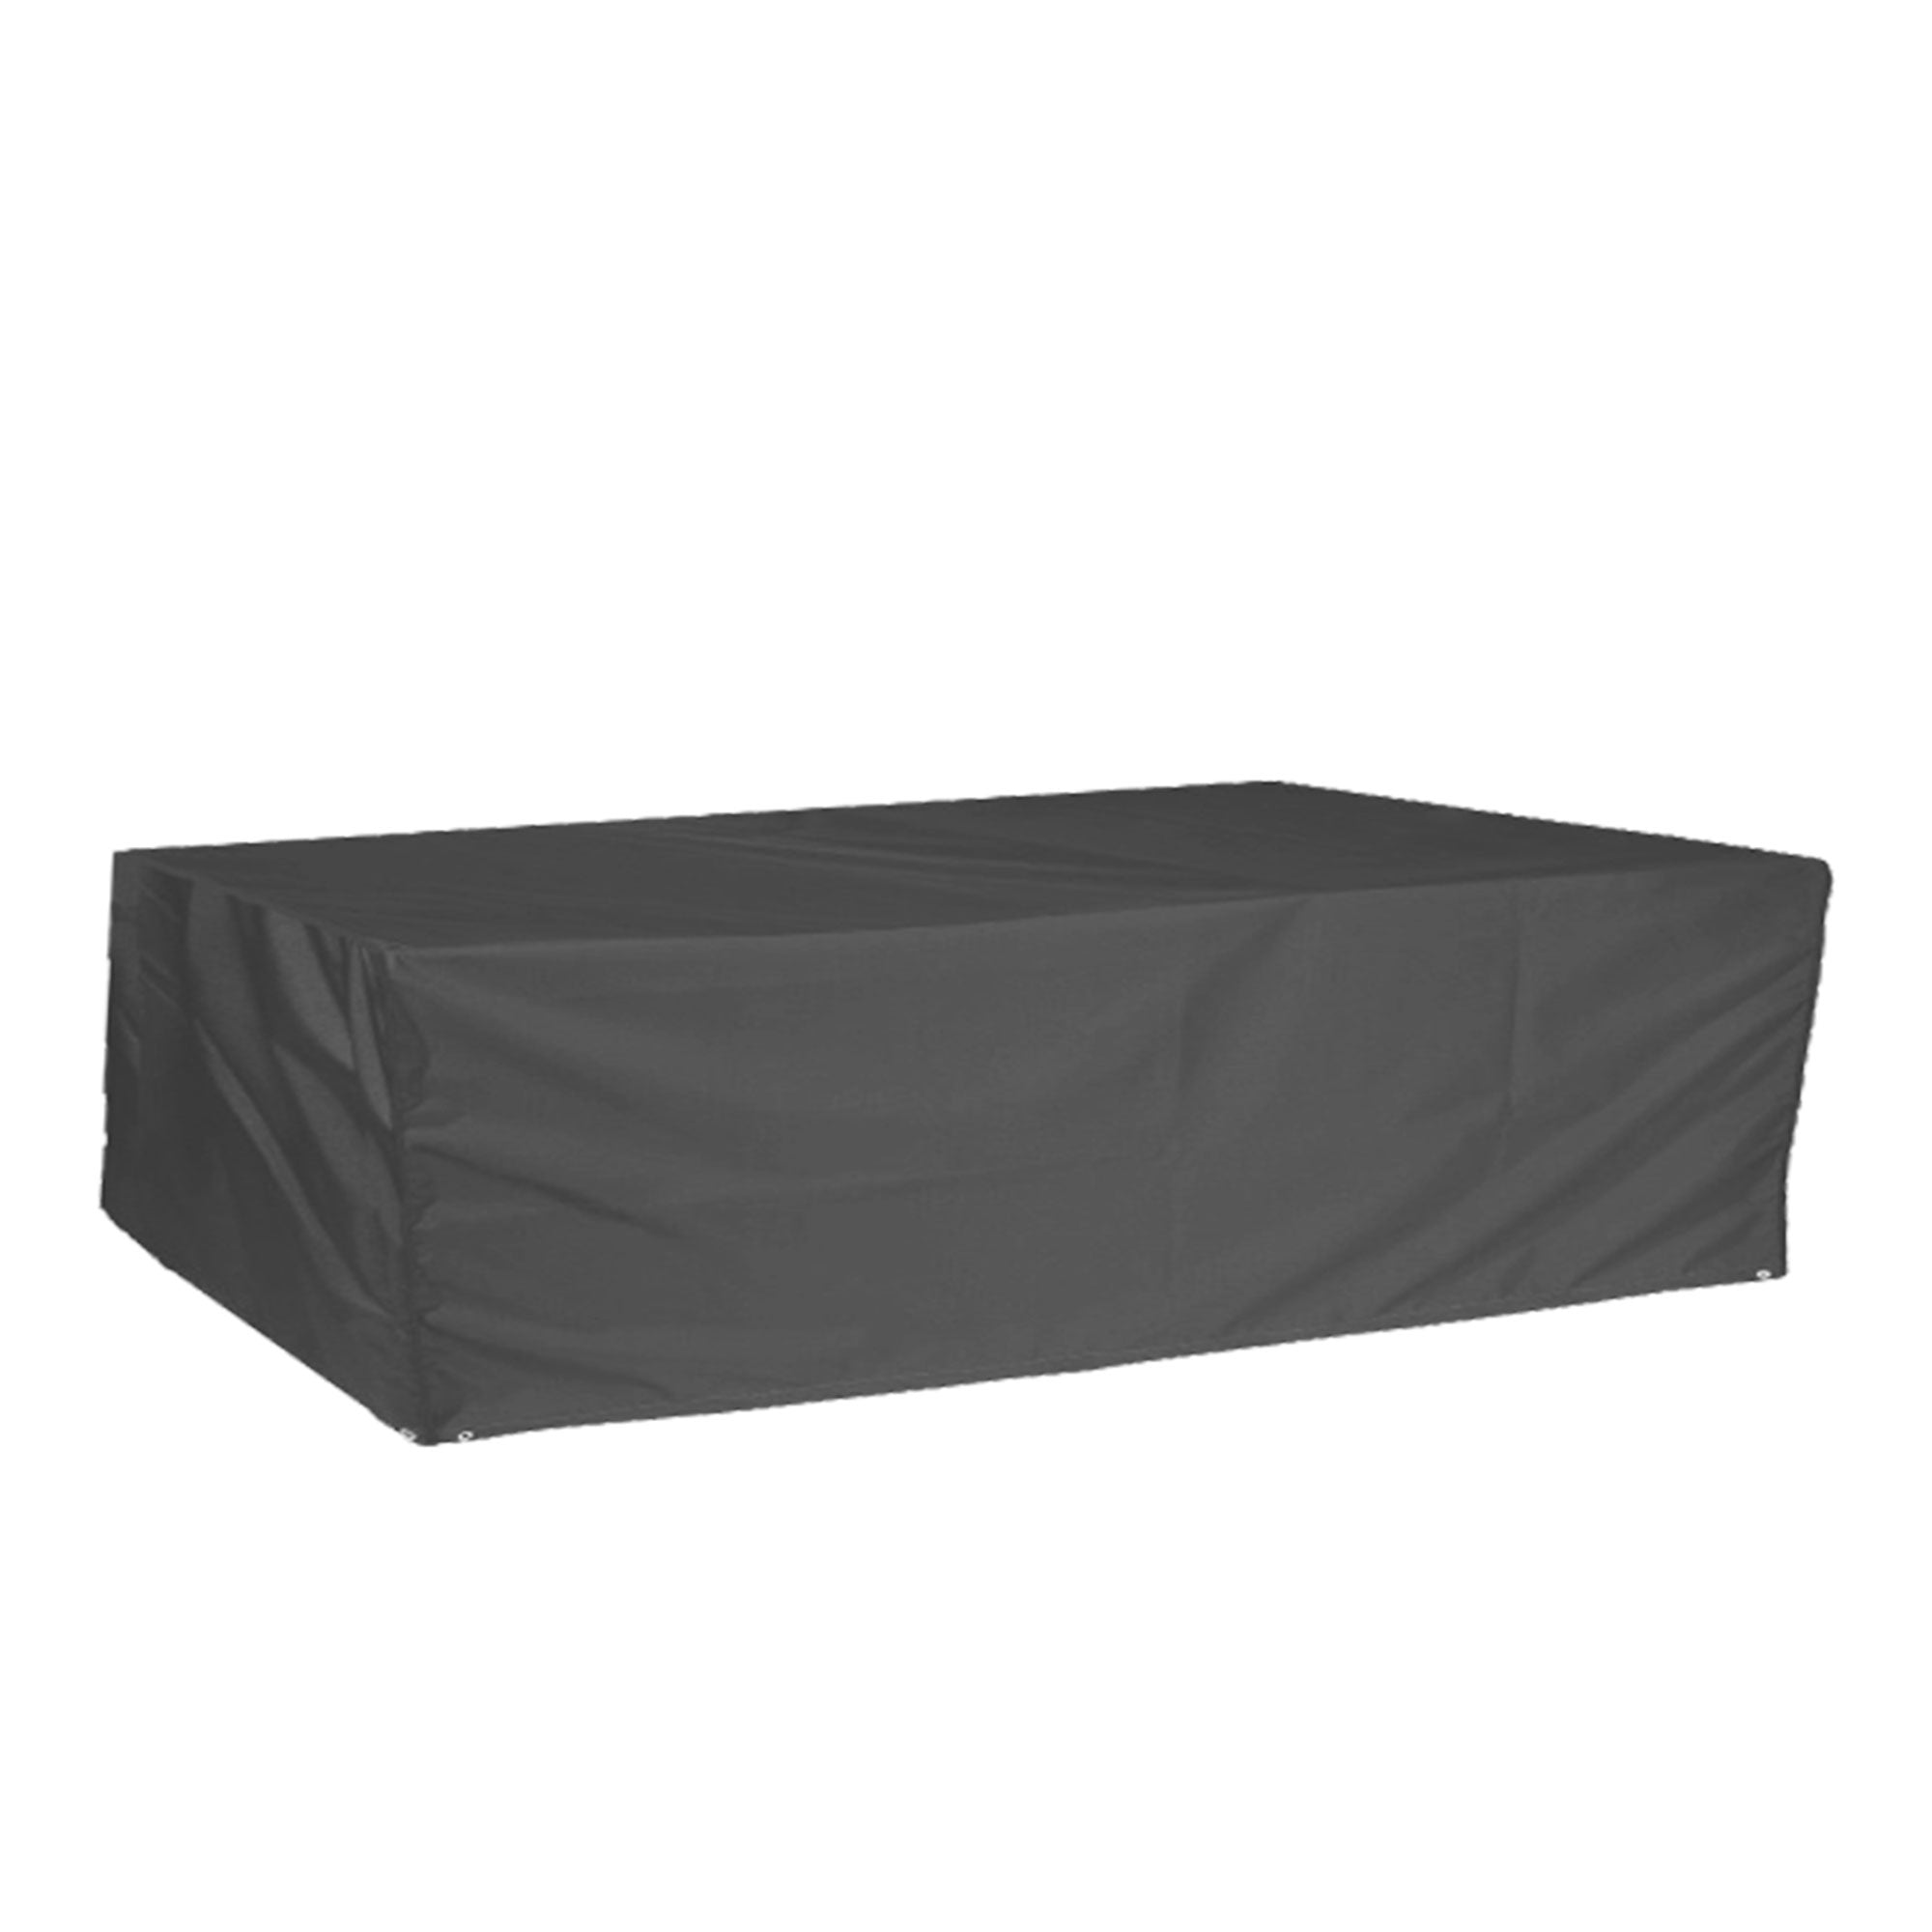 Premium Furniture Covers - Modular Corner Sofa & Dining Set Cover Storm Black 200 x 200cm